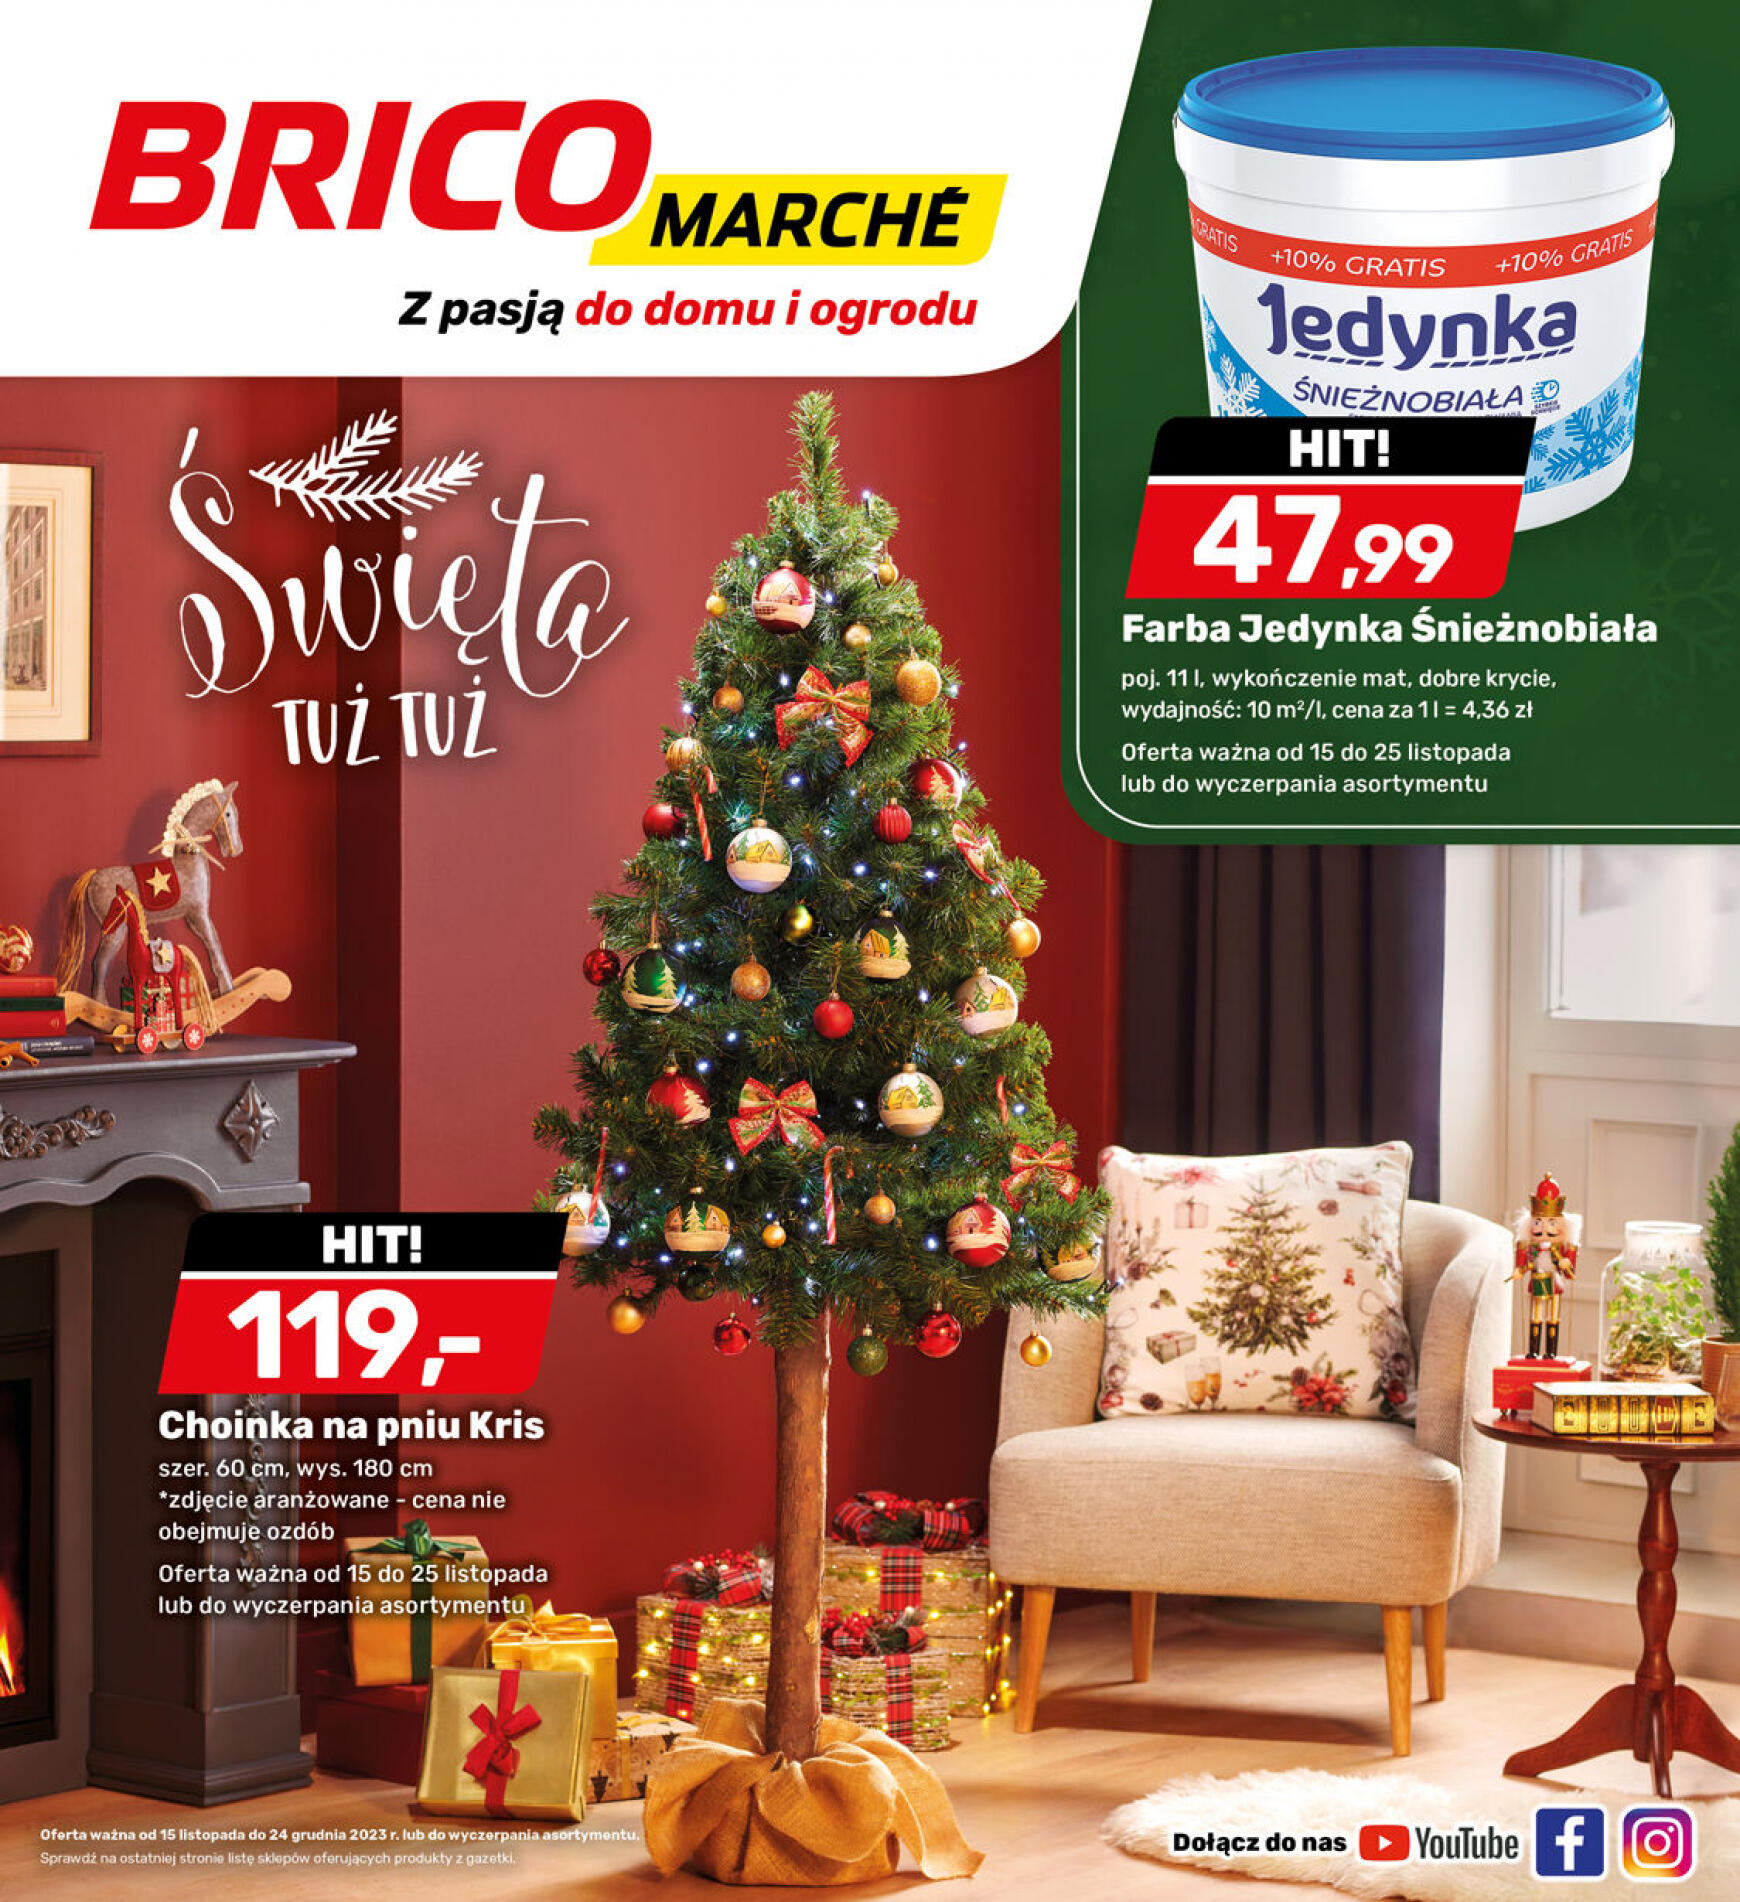 brico-marche - - Bricomarche - page: 16